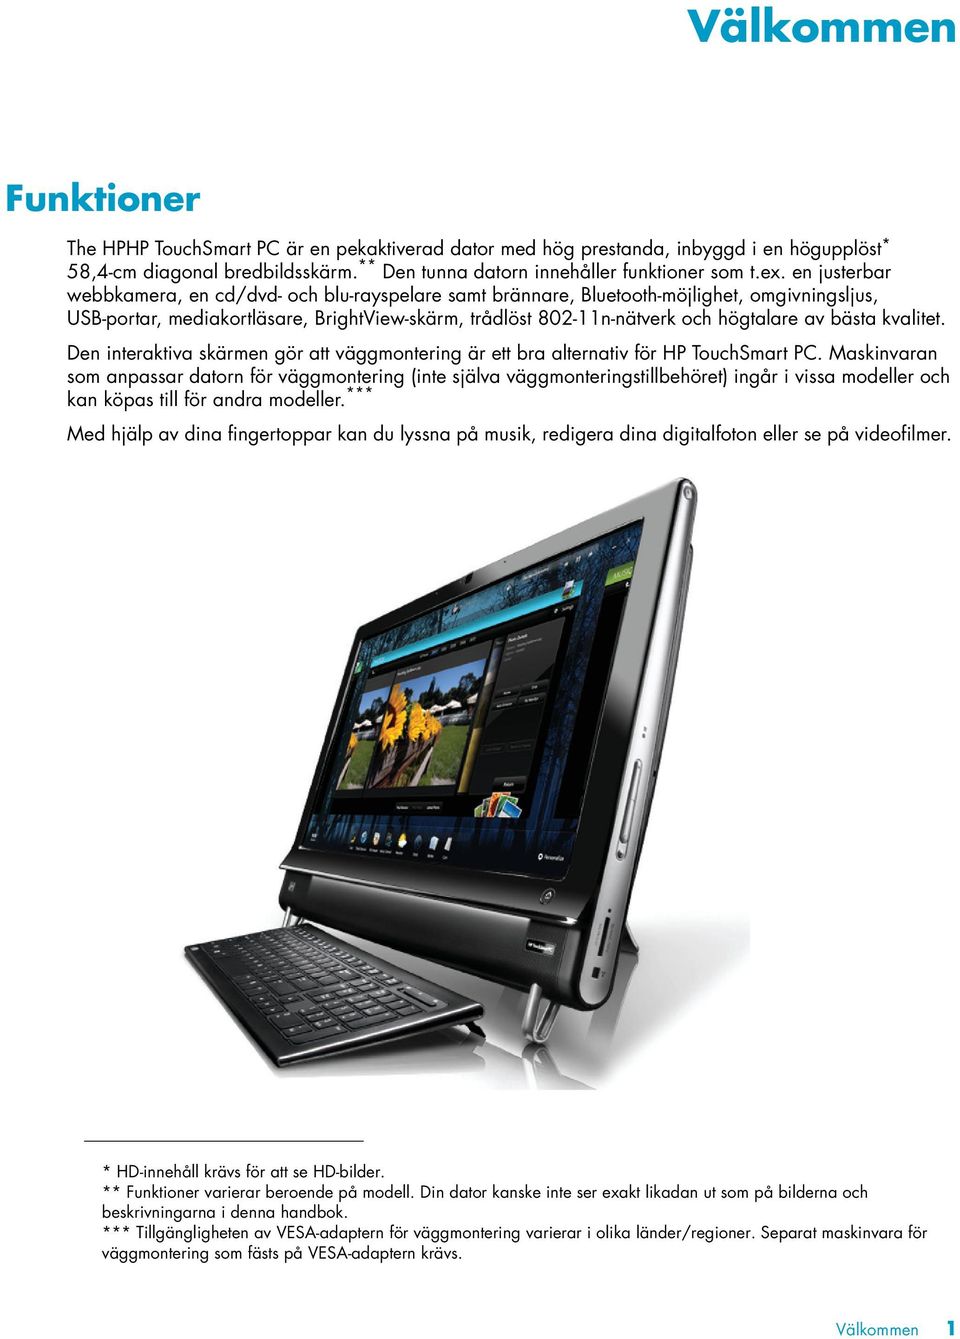 bästa kvalitet. Den interaktiva skärmen gör att väggmontering är ett bra alternativ för HP TouchSmart PC.